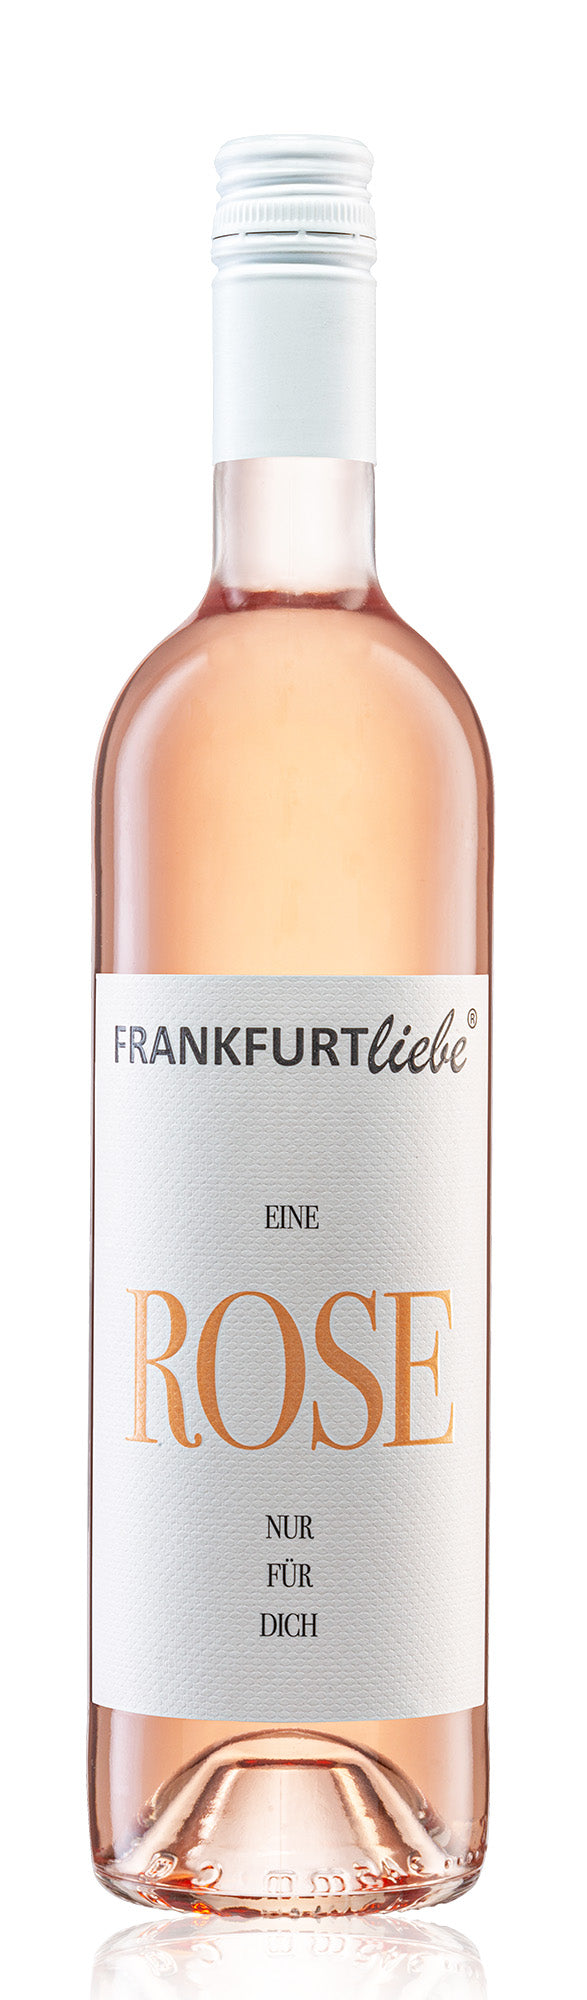 Frankfurtliebe Rosé Cuvée 2021 EINE ROSE NUR FÜR DICH 0,75L (Grundpreis 13,20€/L)